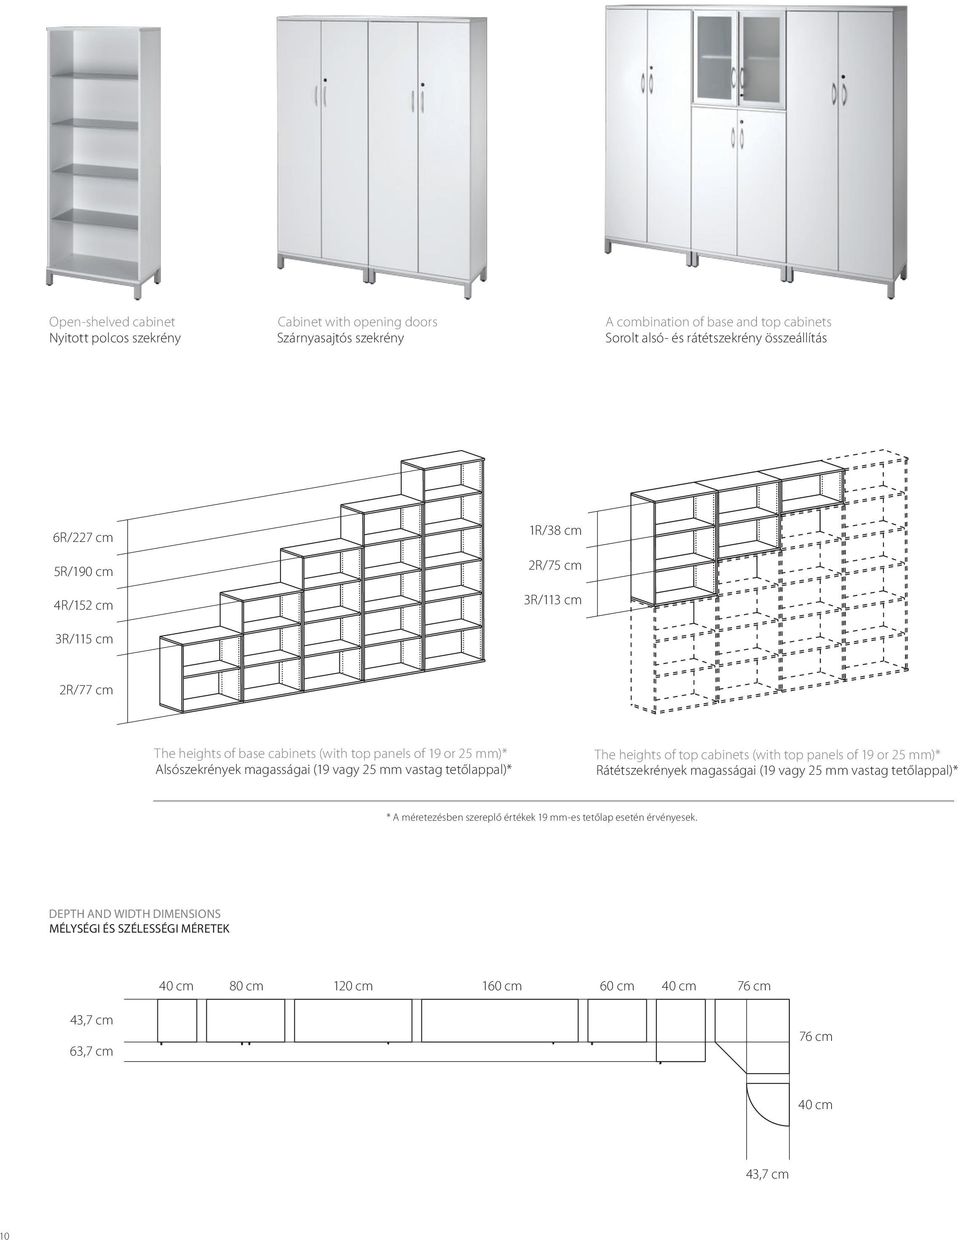 mm vastag tetőlappal)* The heights of top cabinets (with top panels of 19 or 25 mm)* Rátétszekrények magasságai (19 vagy 25 mm vastag tetőlappal)* * A méretezésben szereplő